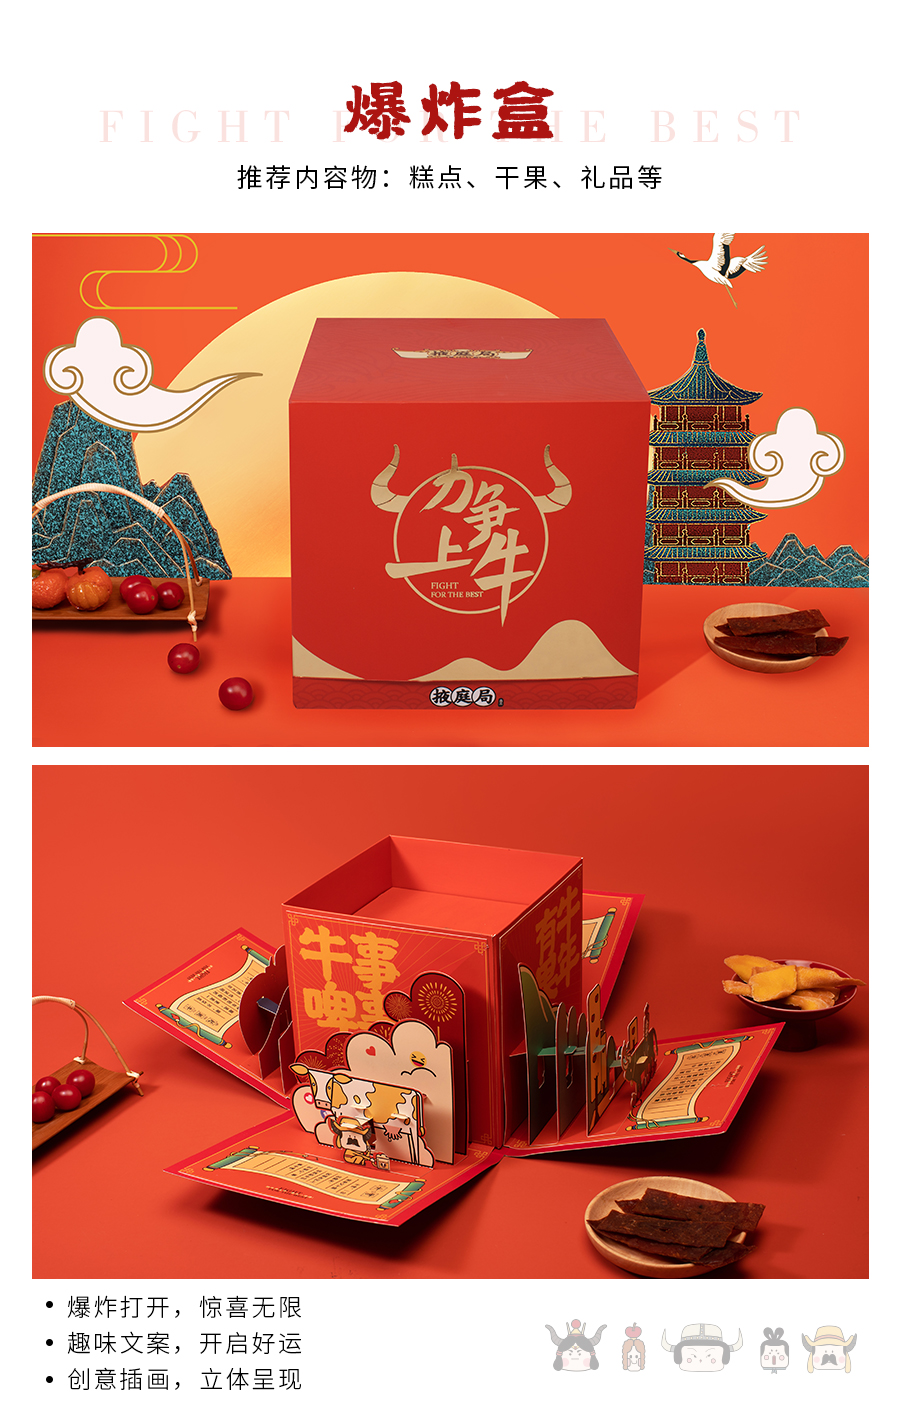 【方森园】新年礼盒包装设计——《力争上牛》